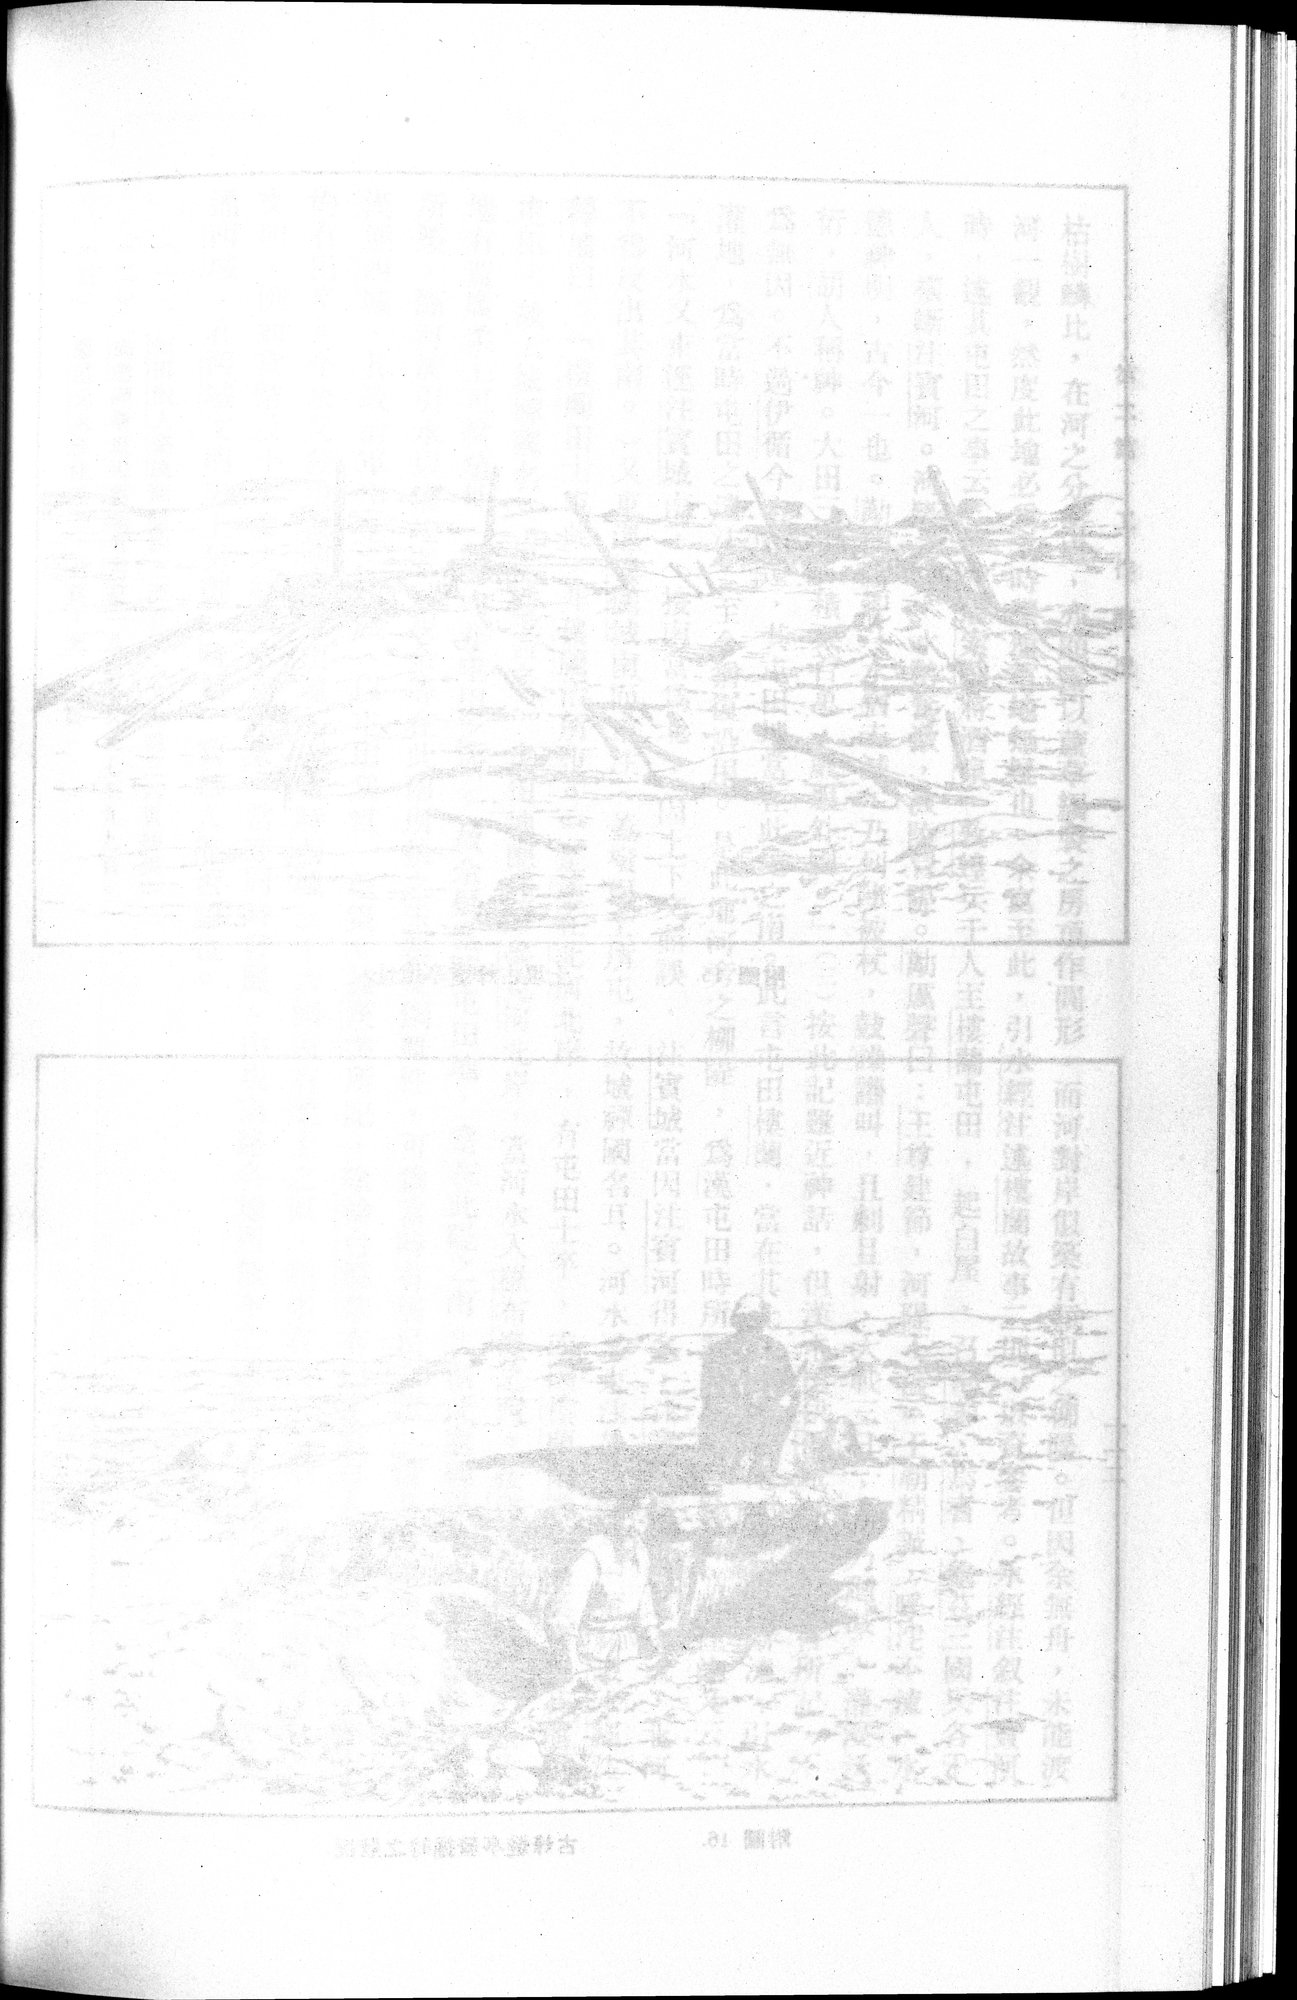 羅布淖爾考古記 : vol.1 / Page 154 (Grayscale High Resolution Image)